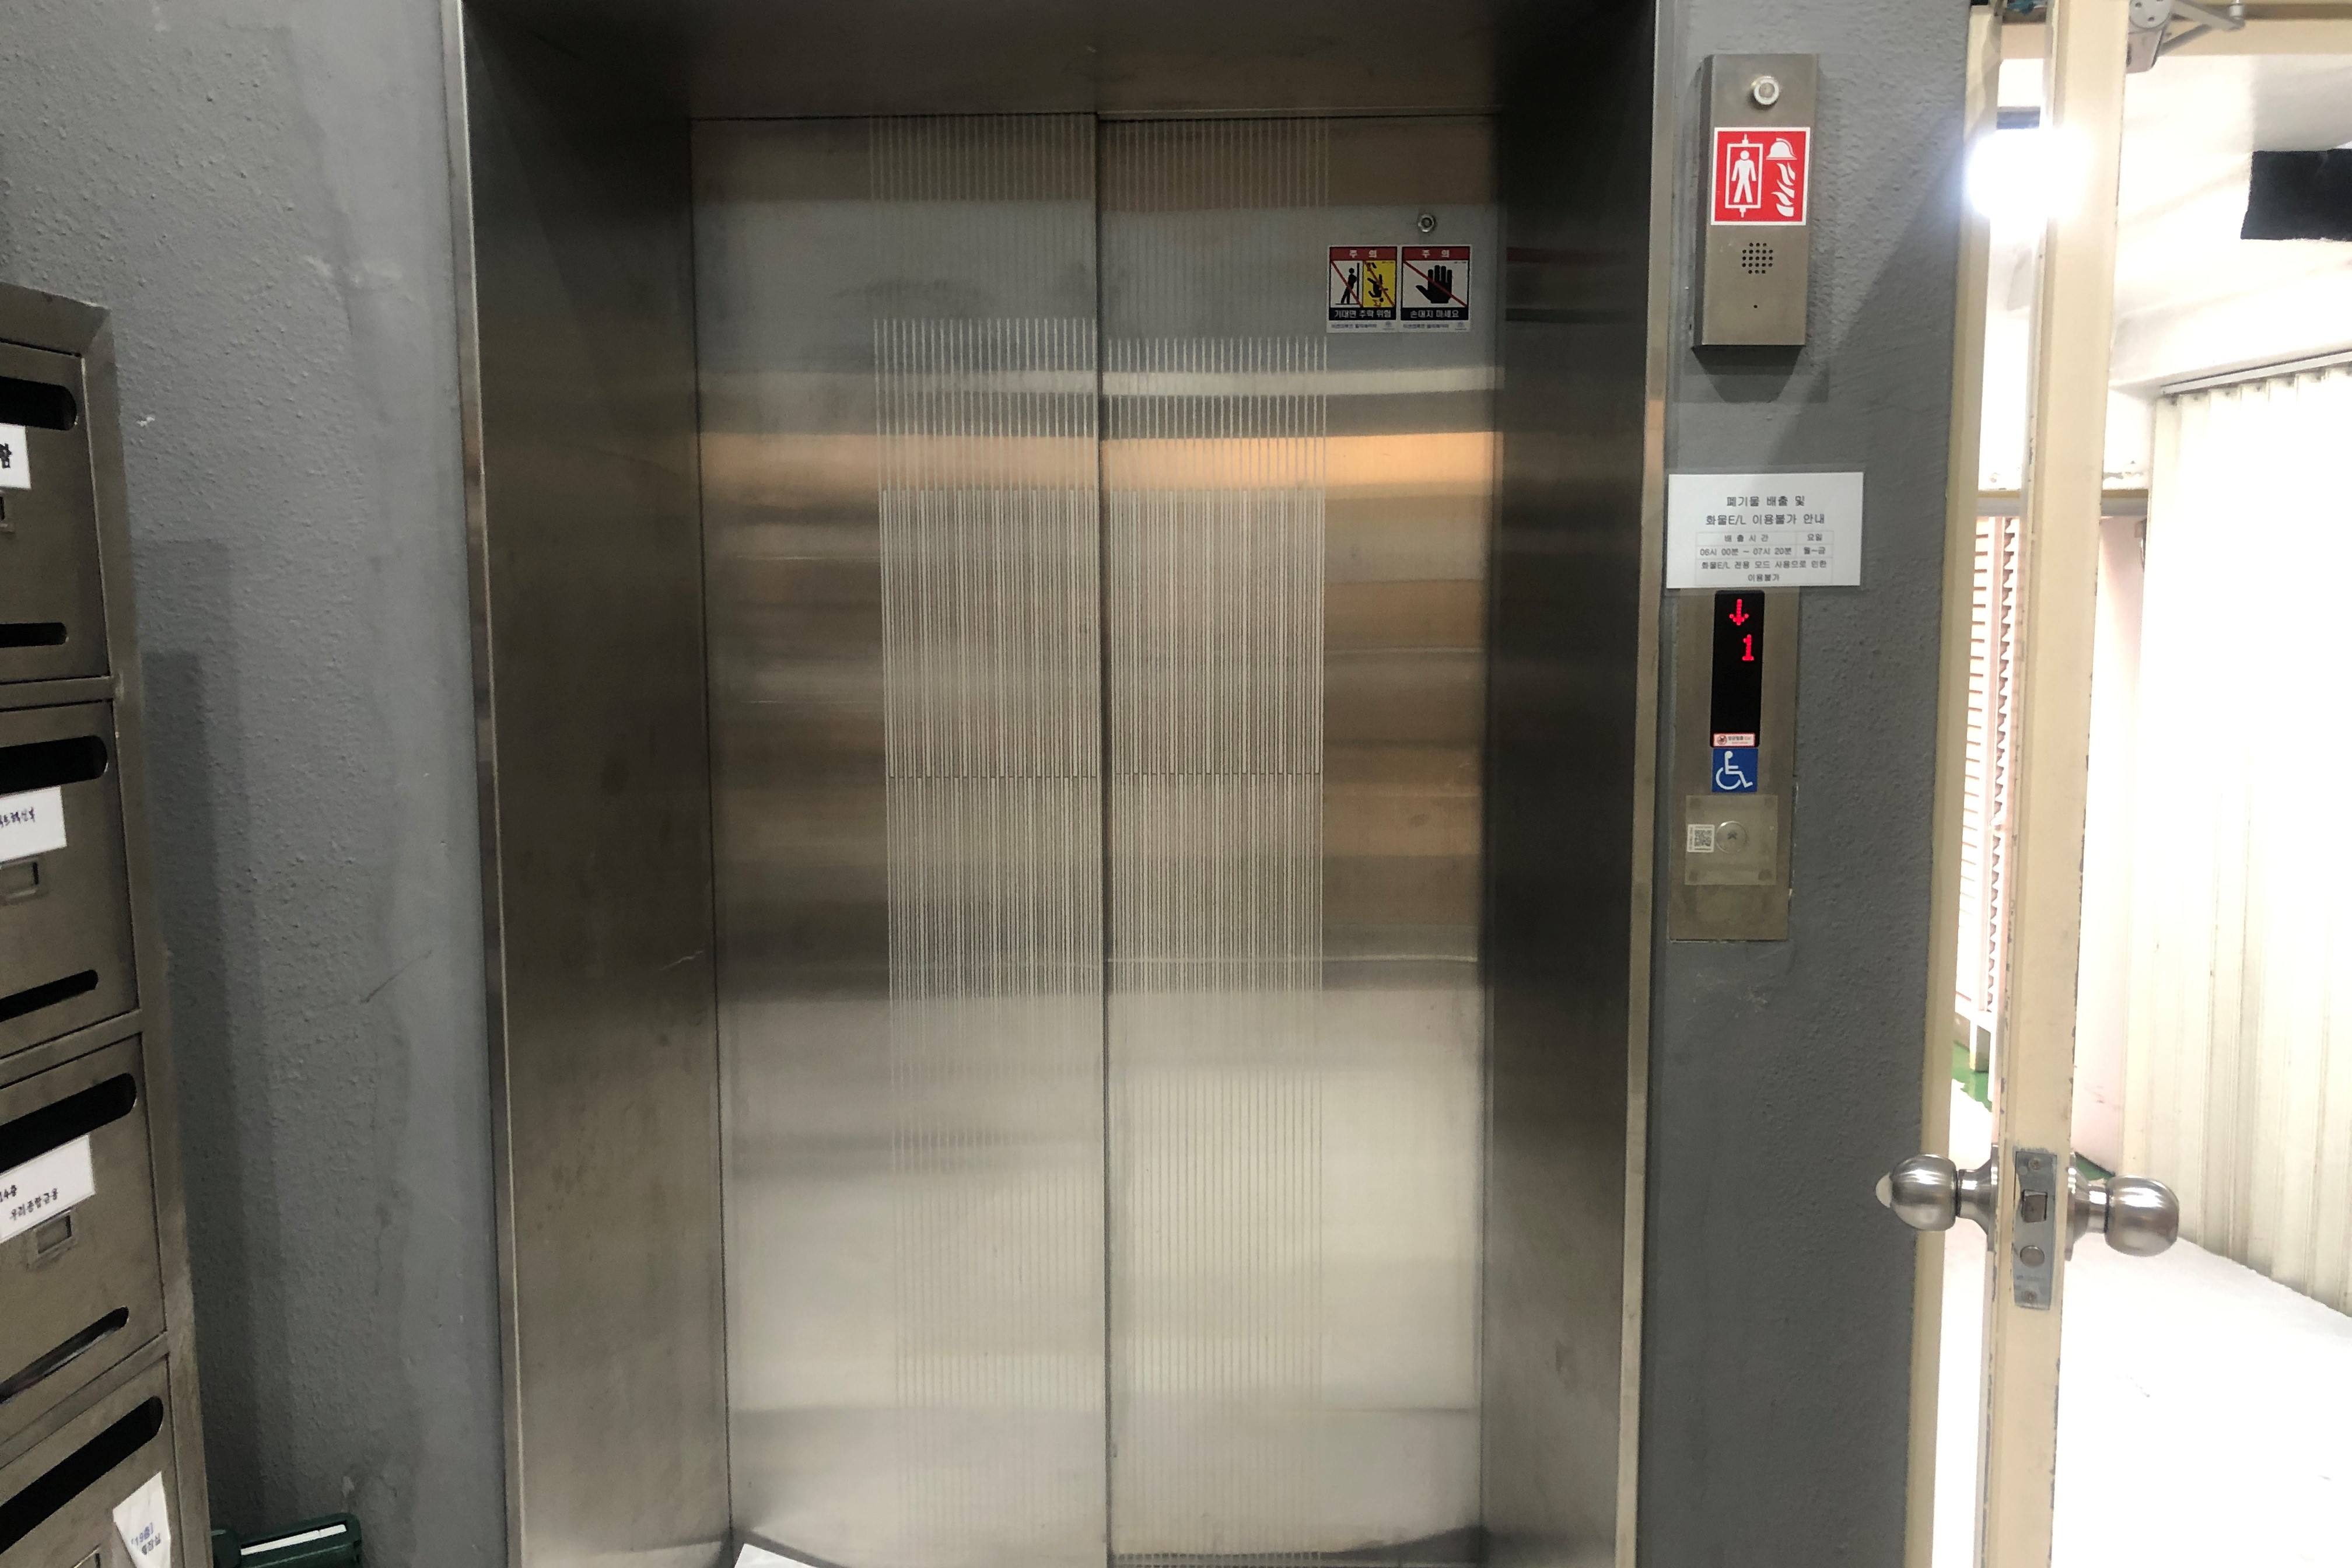 엘리베이터0 : 서울애니메이션센터 엘리베이터 입구